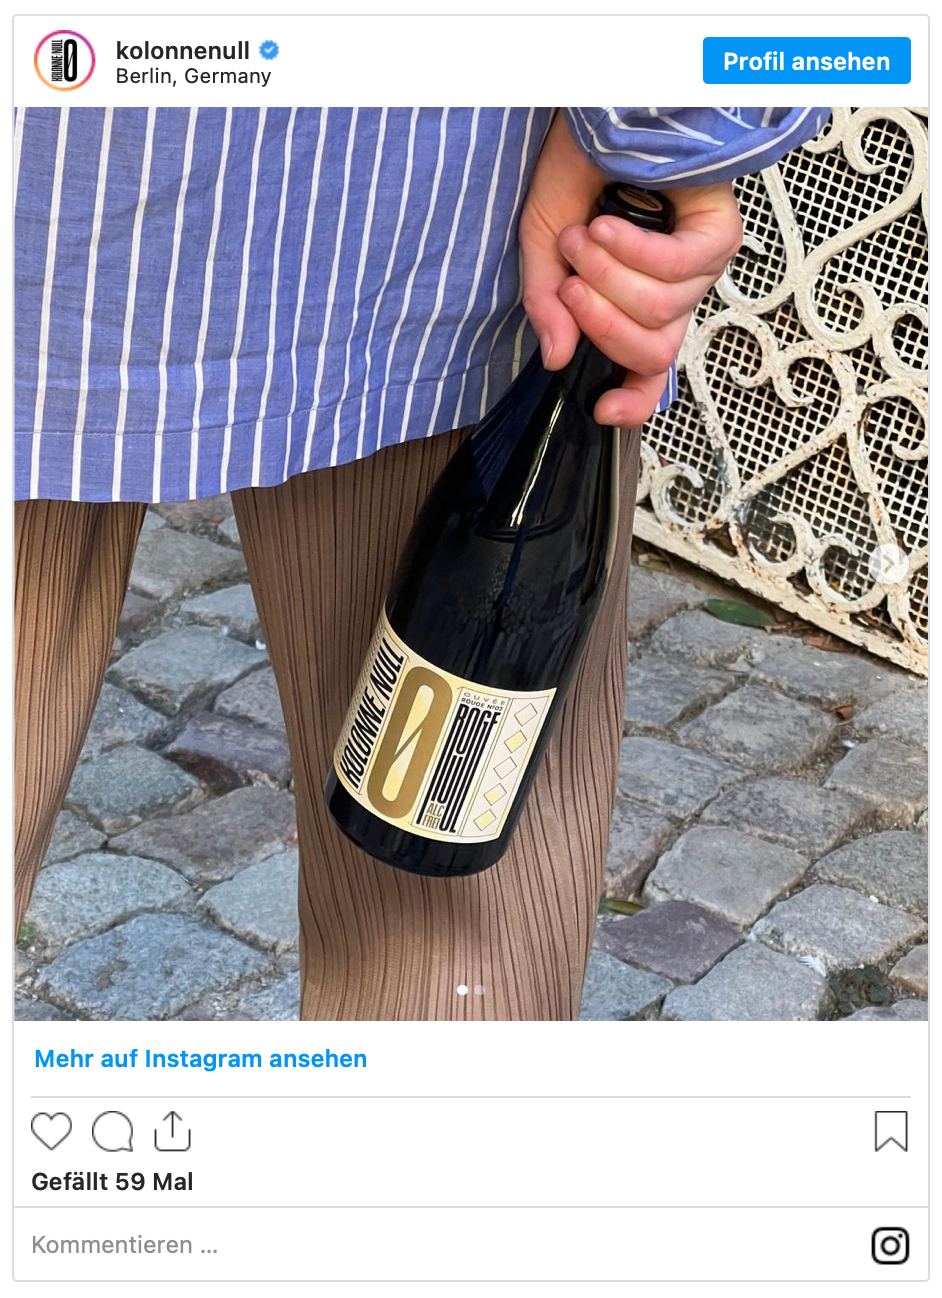 Falstaff empfiehlt Kolonne Null Wein zur Fastenzeit